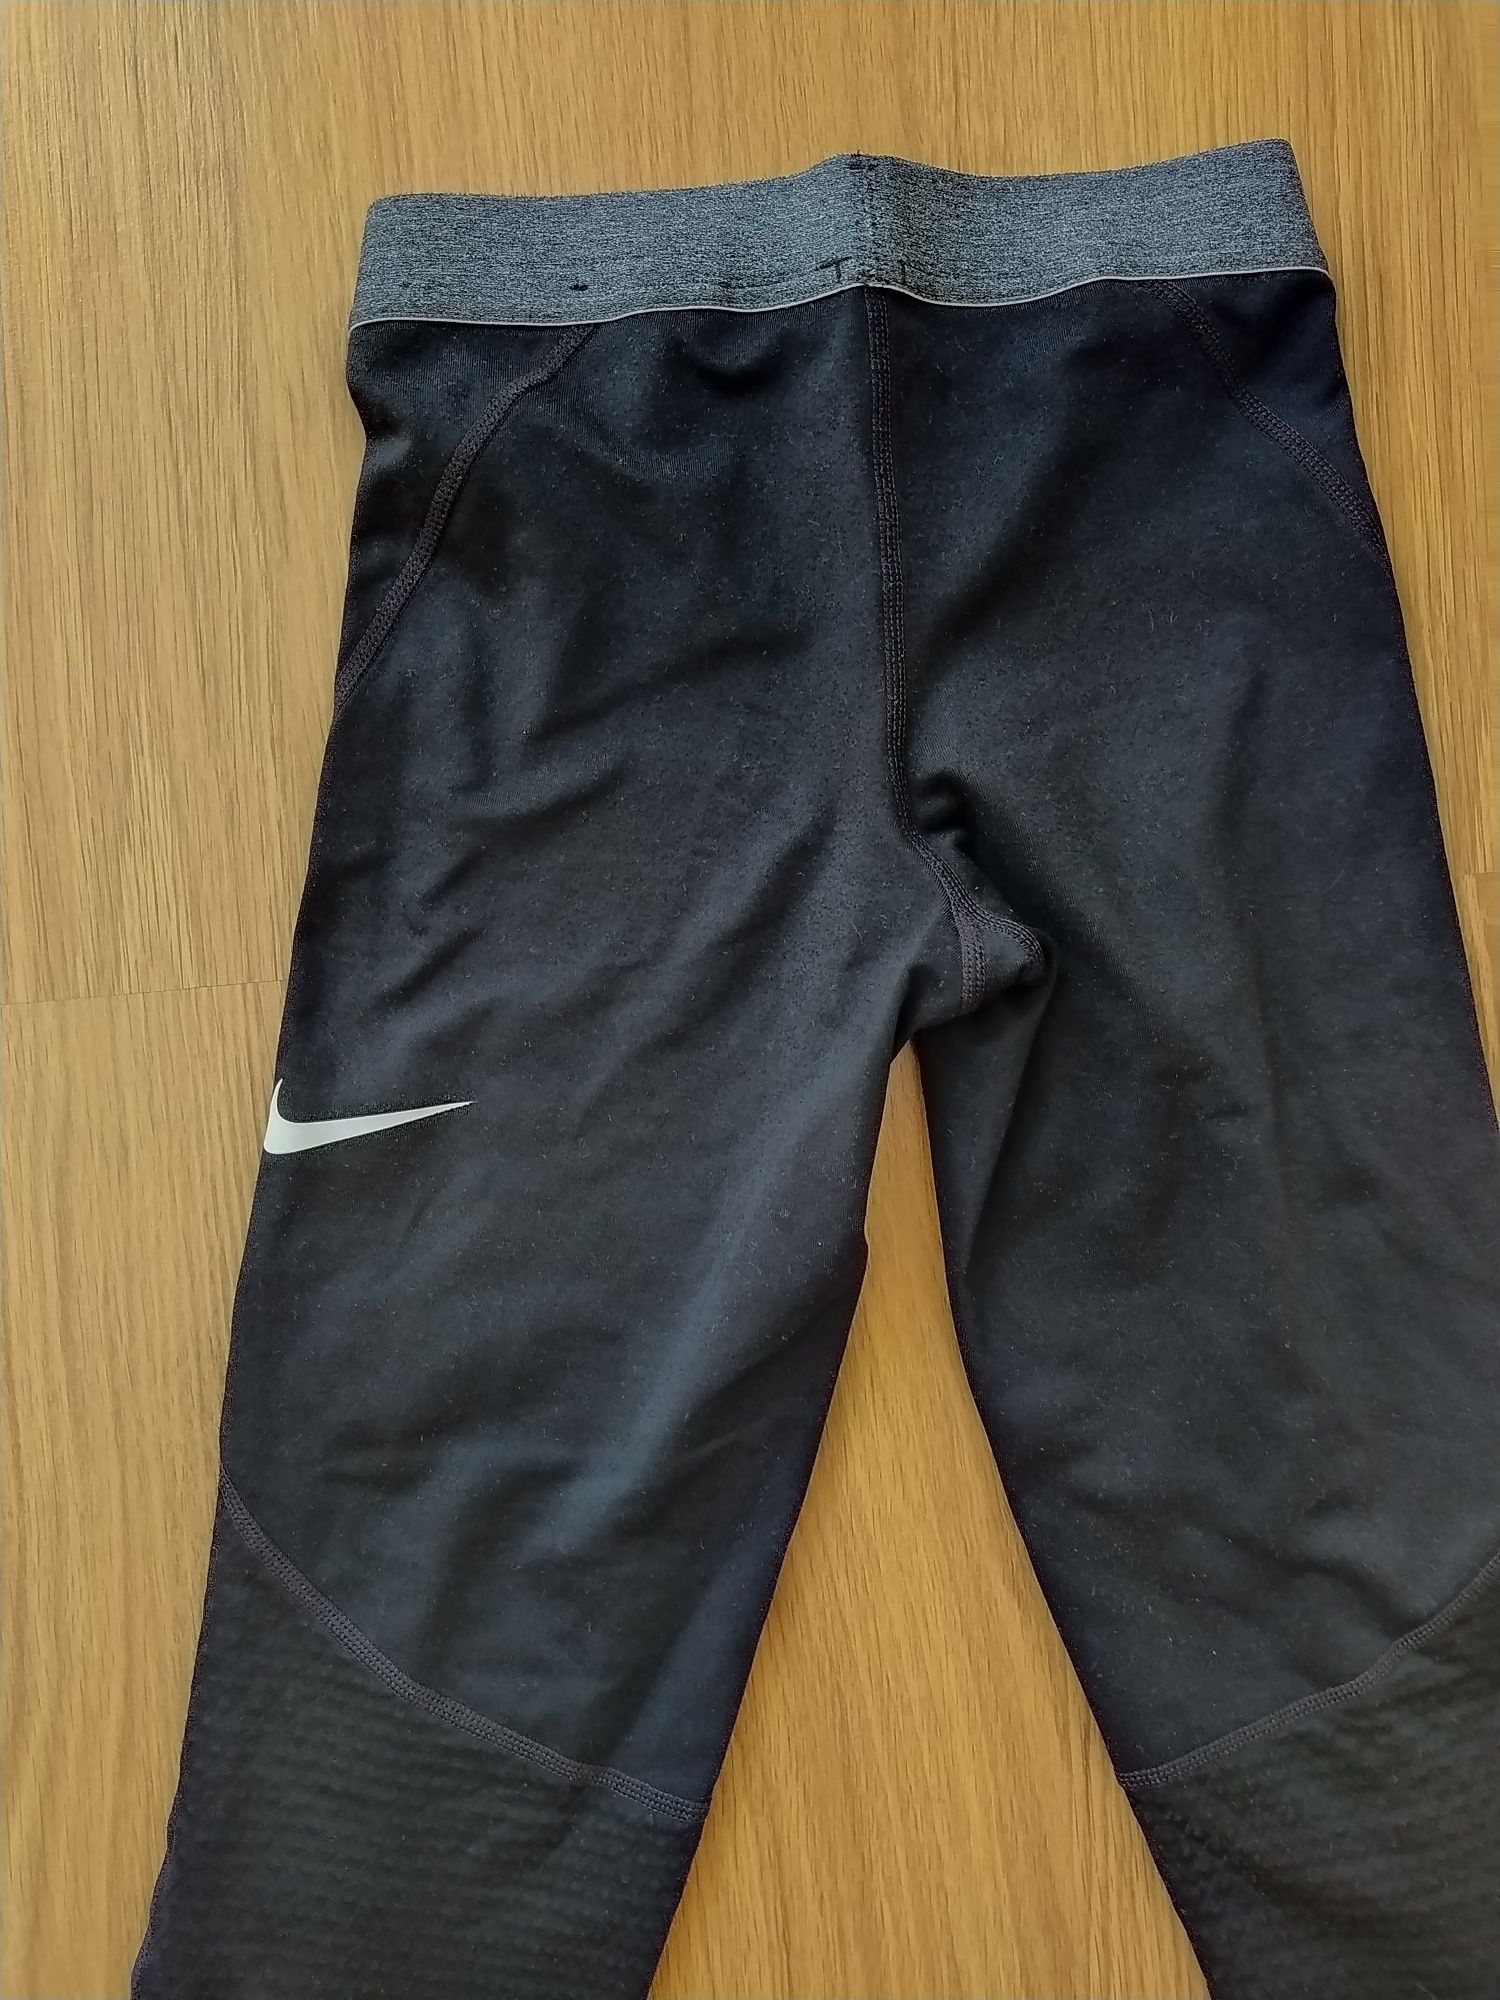 Calças de lycra Nike tamanho M (10/12 anos)